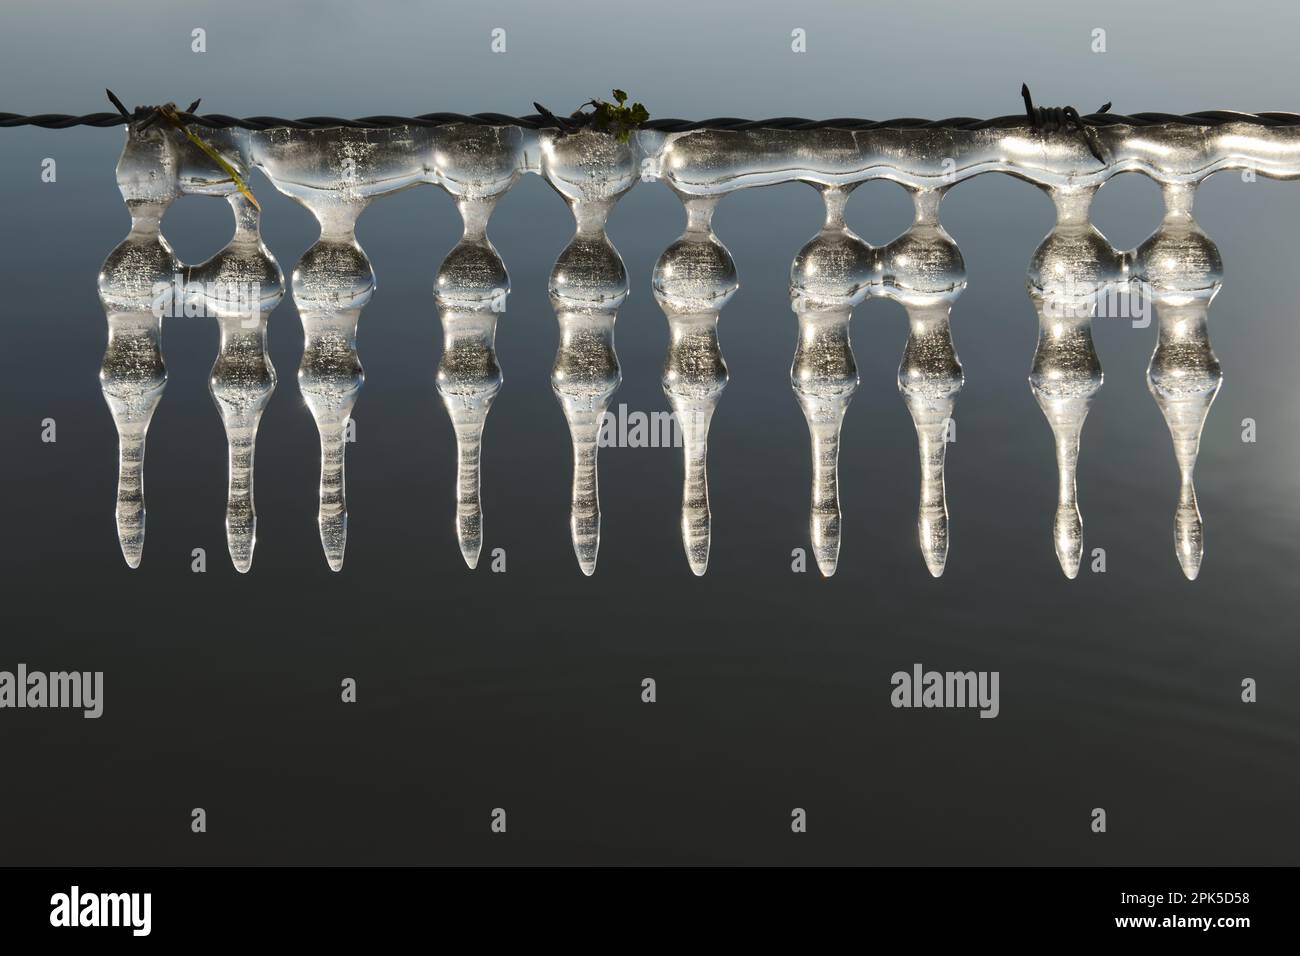 Decorazione di ghiaccio su filo spinato... Ciclicini (alluvione invernale 2020/2021) sul basso Reno, sculture di ghiaccio naturale formate dal vento e dal tempo Foto Stock